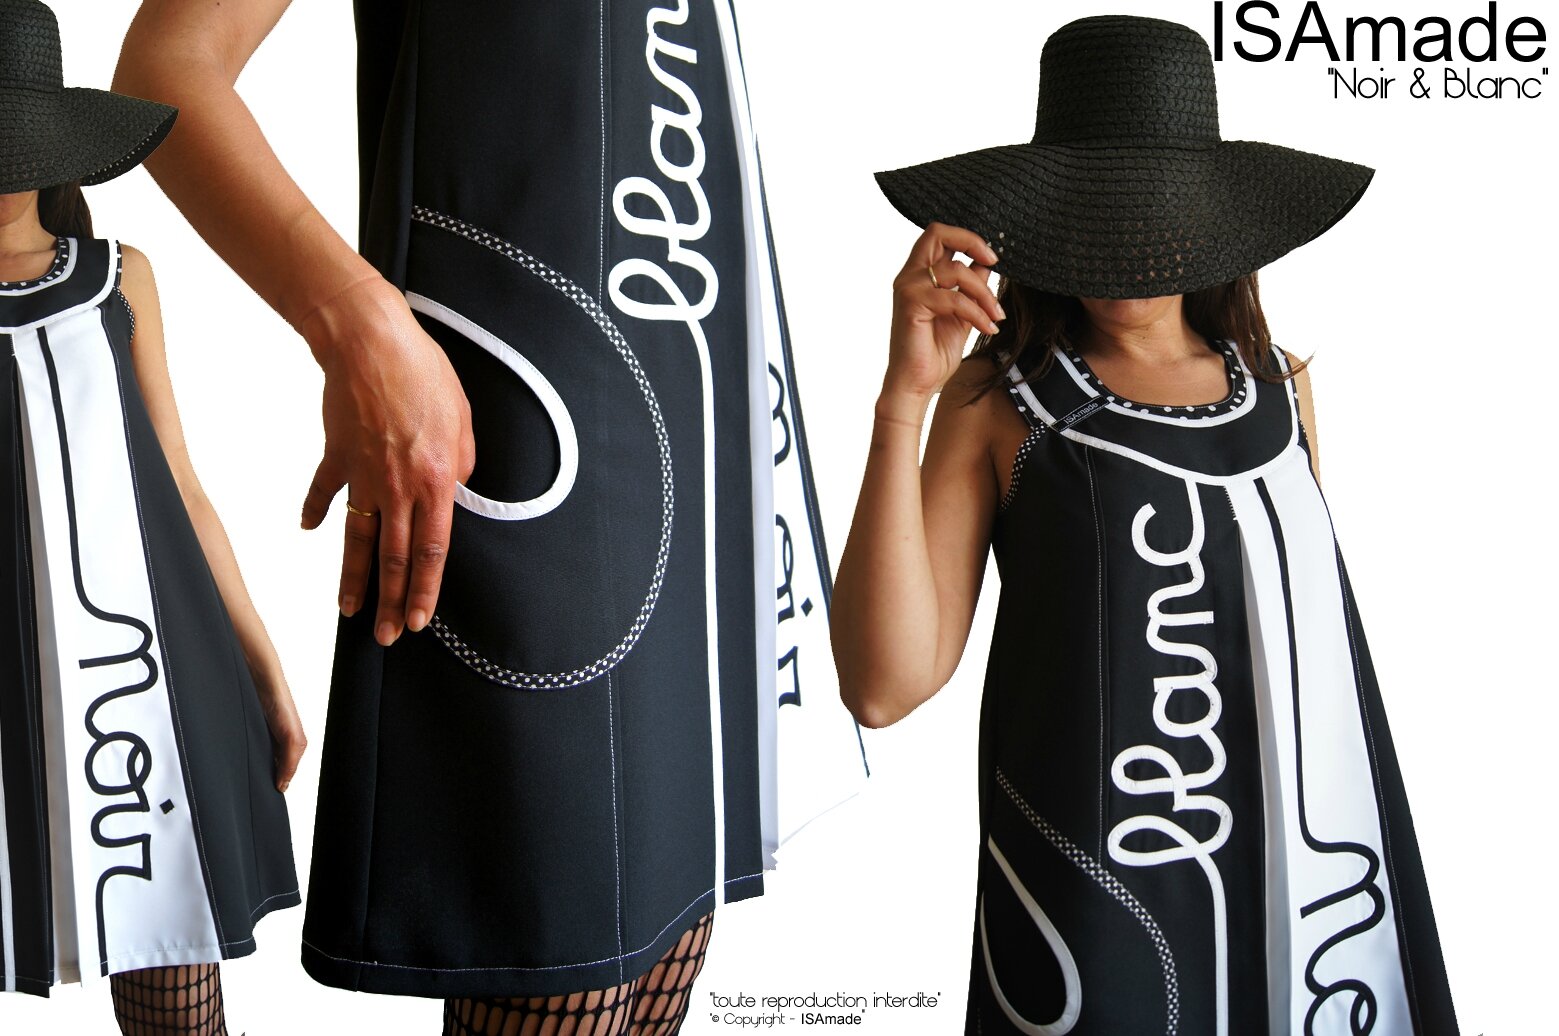 Robe trapèze Bicolore Noir Blanc Tendance Femme 2015 Graphique et applications Stylisées Noir et blanc Cousues